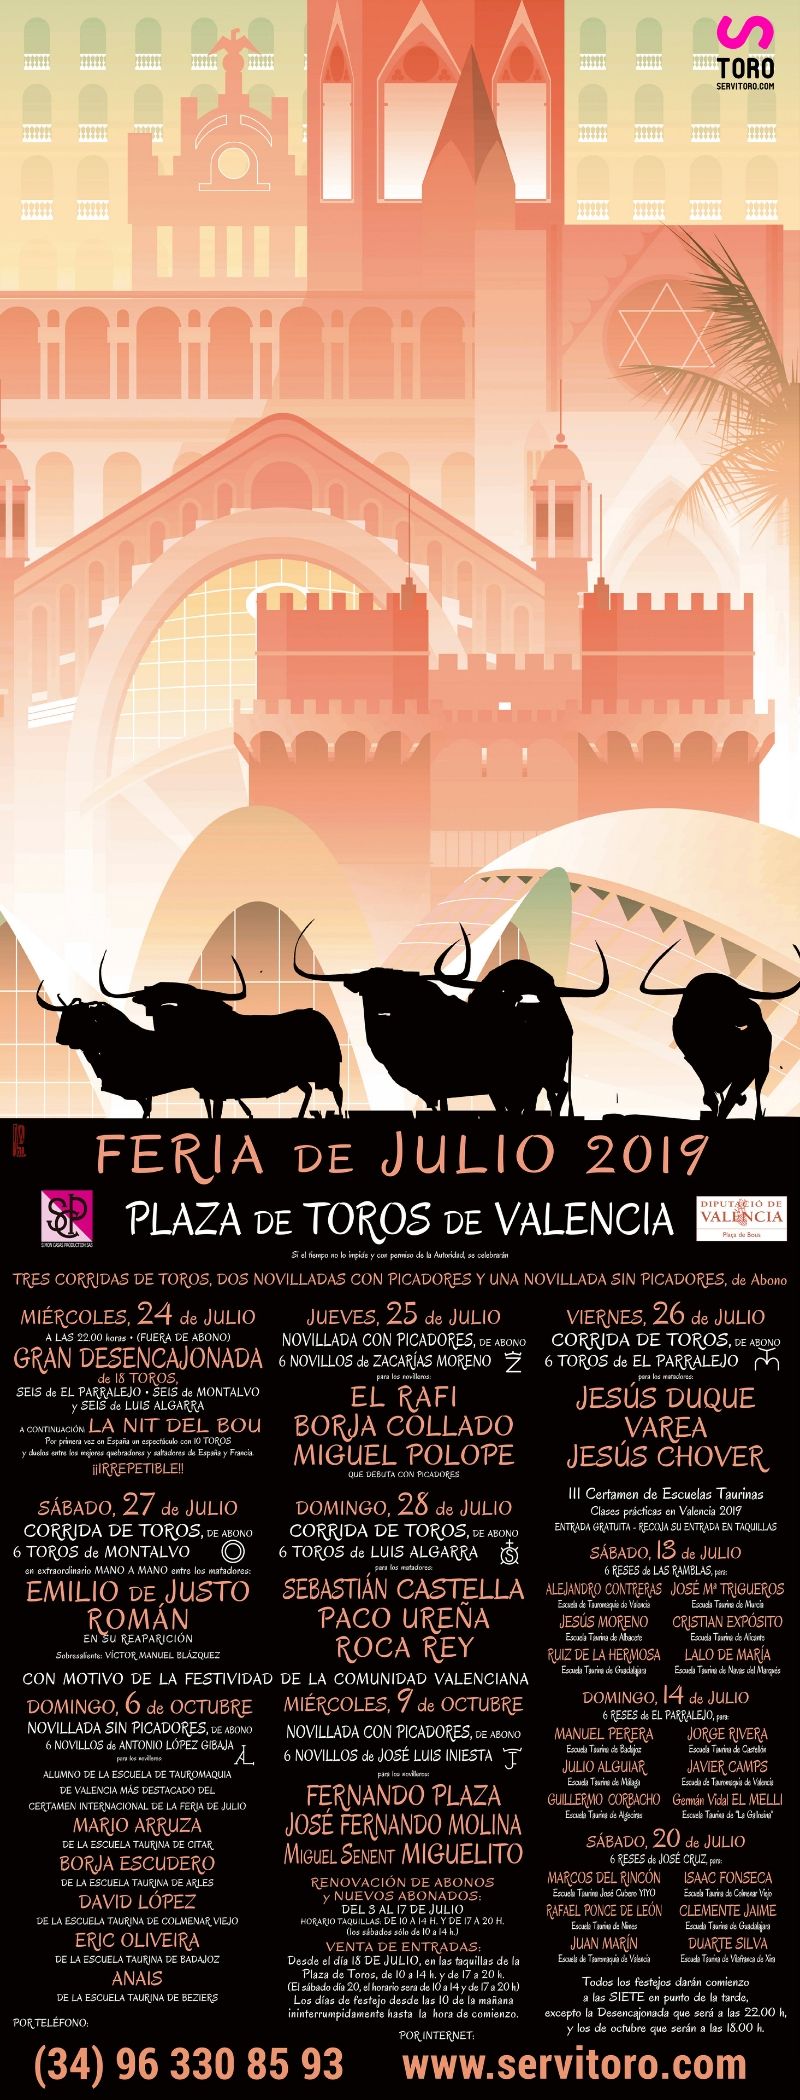 Feria de Julio